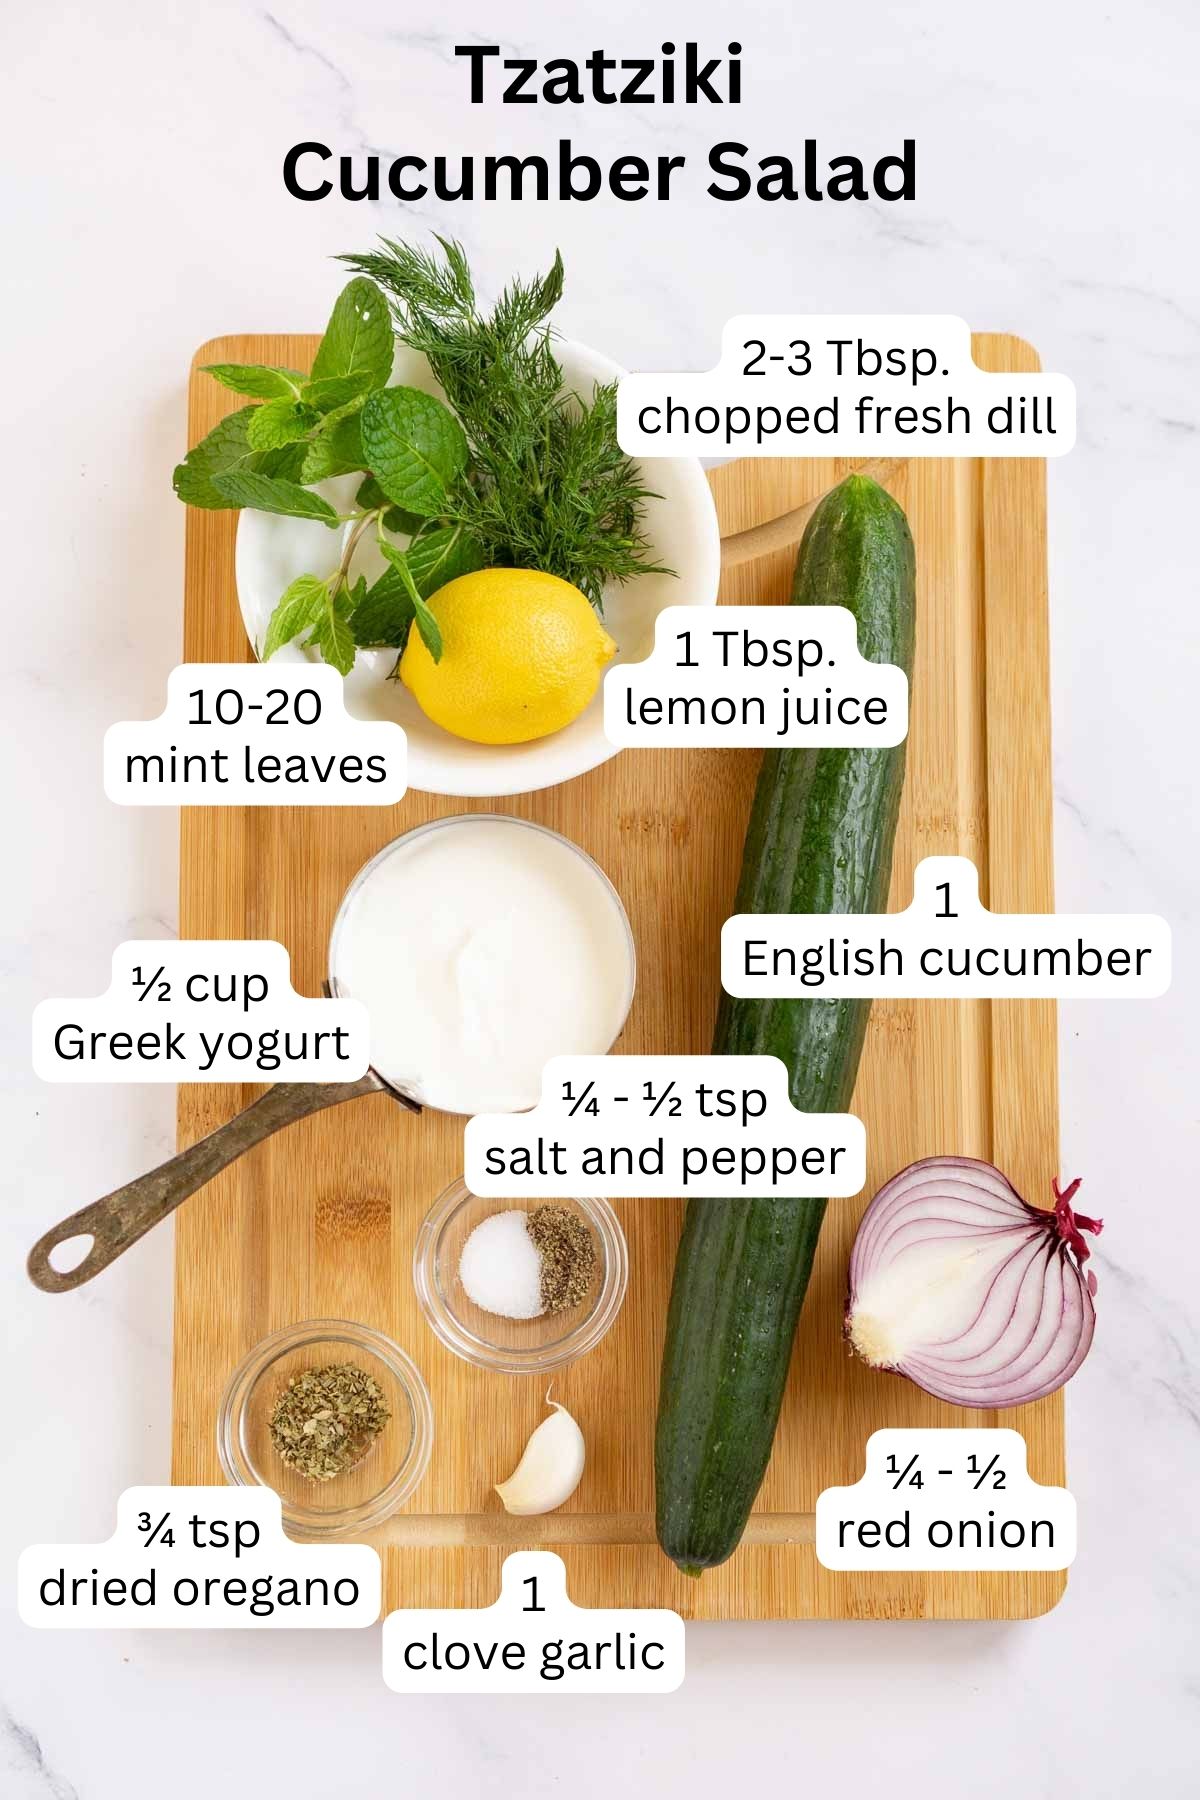 Ingredients to make tzatziki cucumber salad